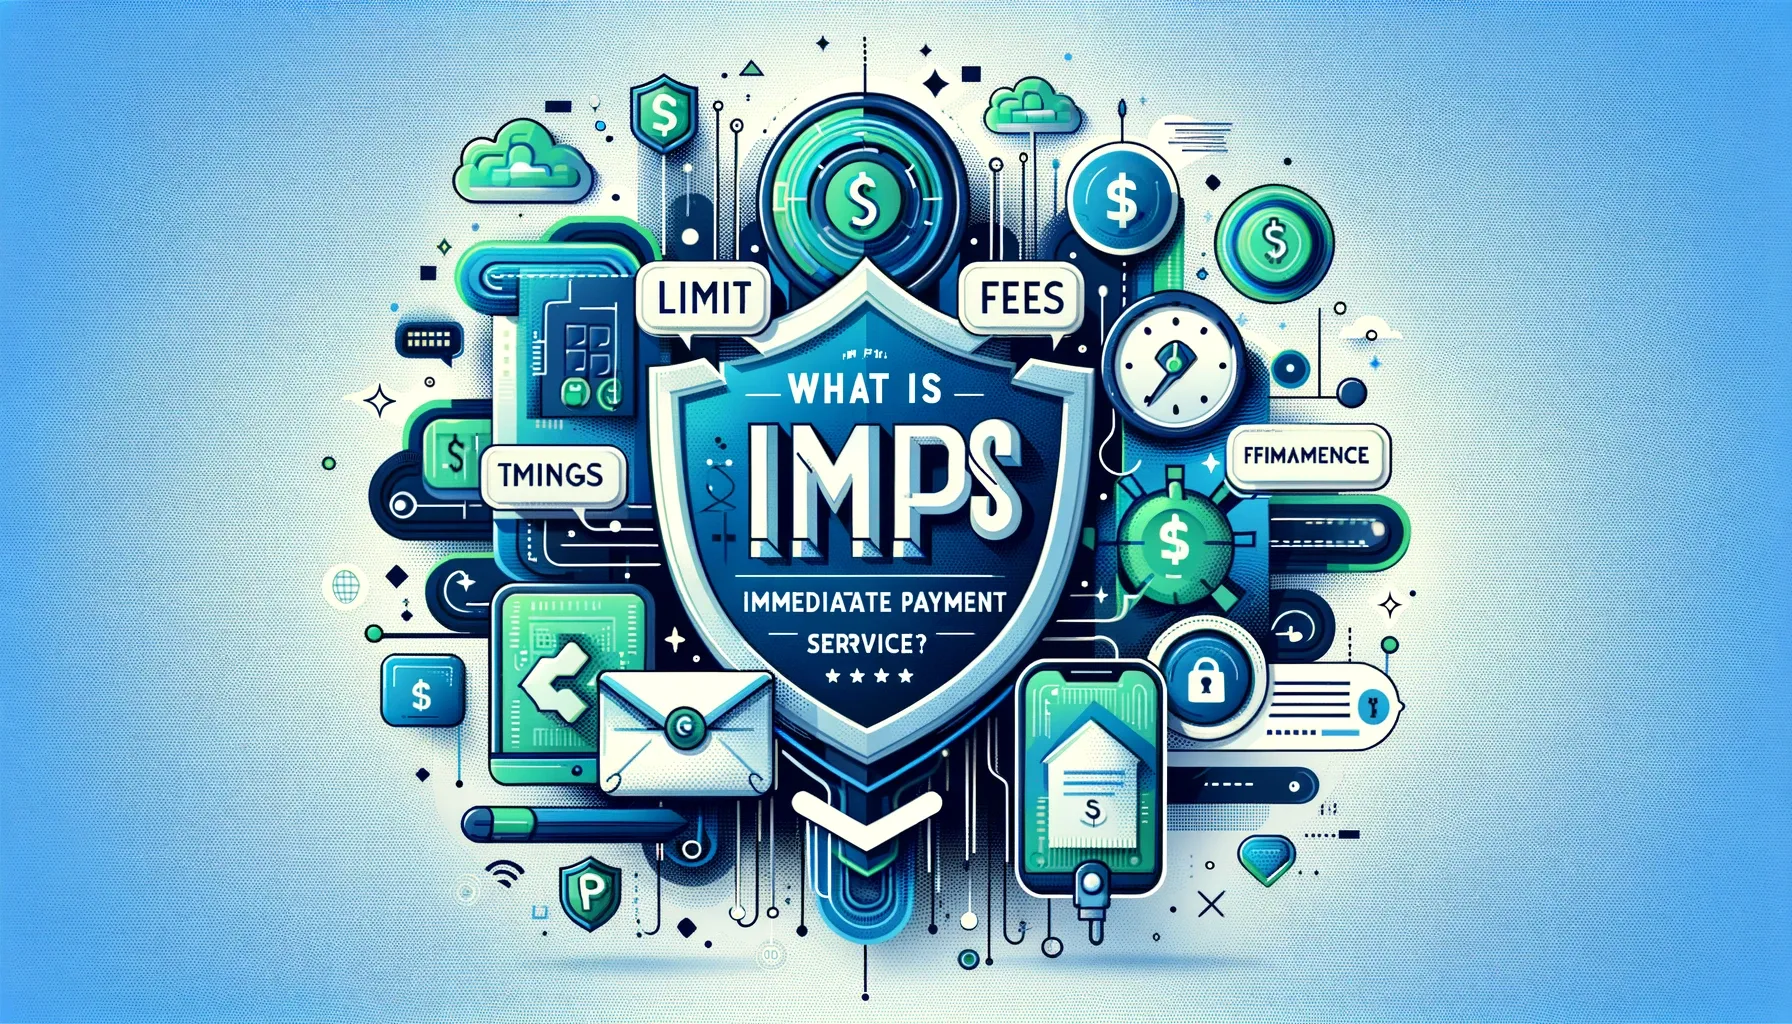 आईएमपीएस (तत्काल भुगतान सेवा)क्या है - सीमा, समय, शुल्क, एमएमआईडी